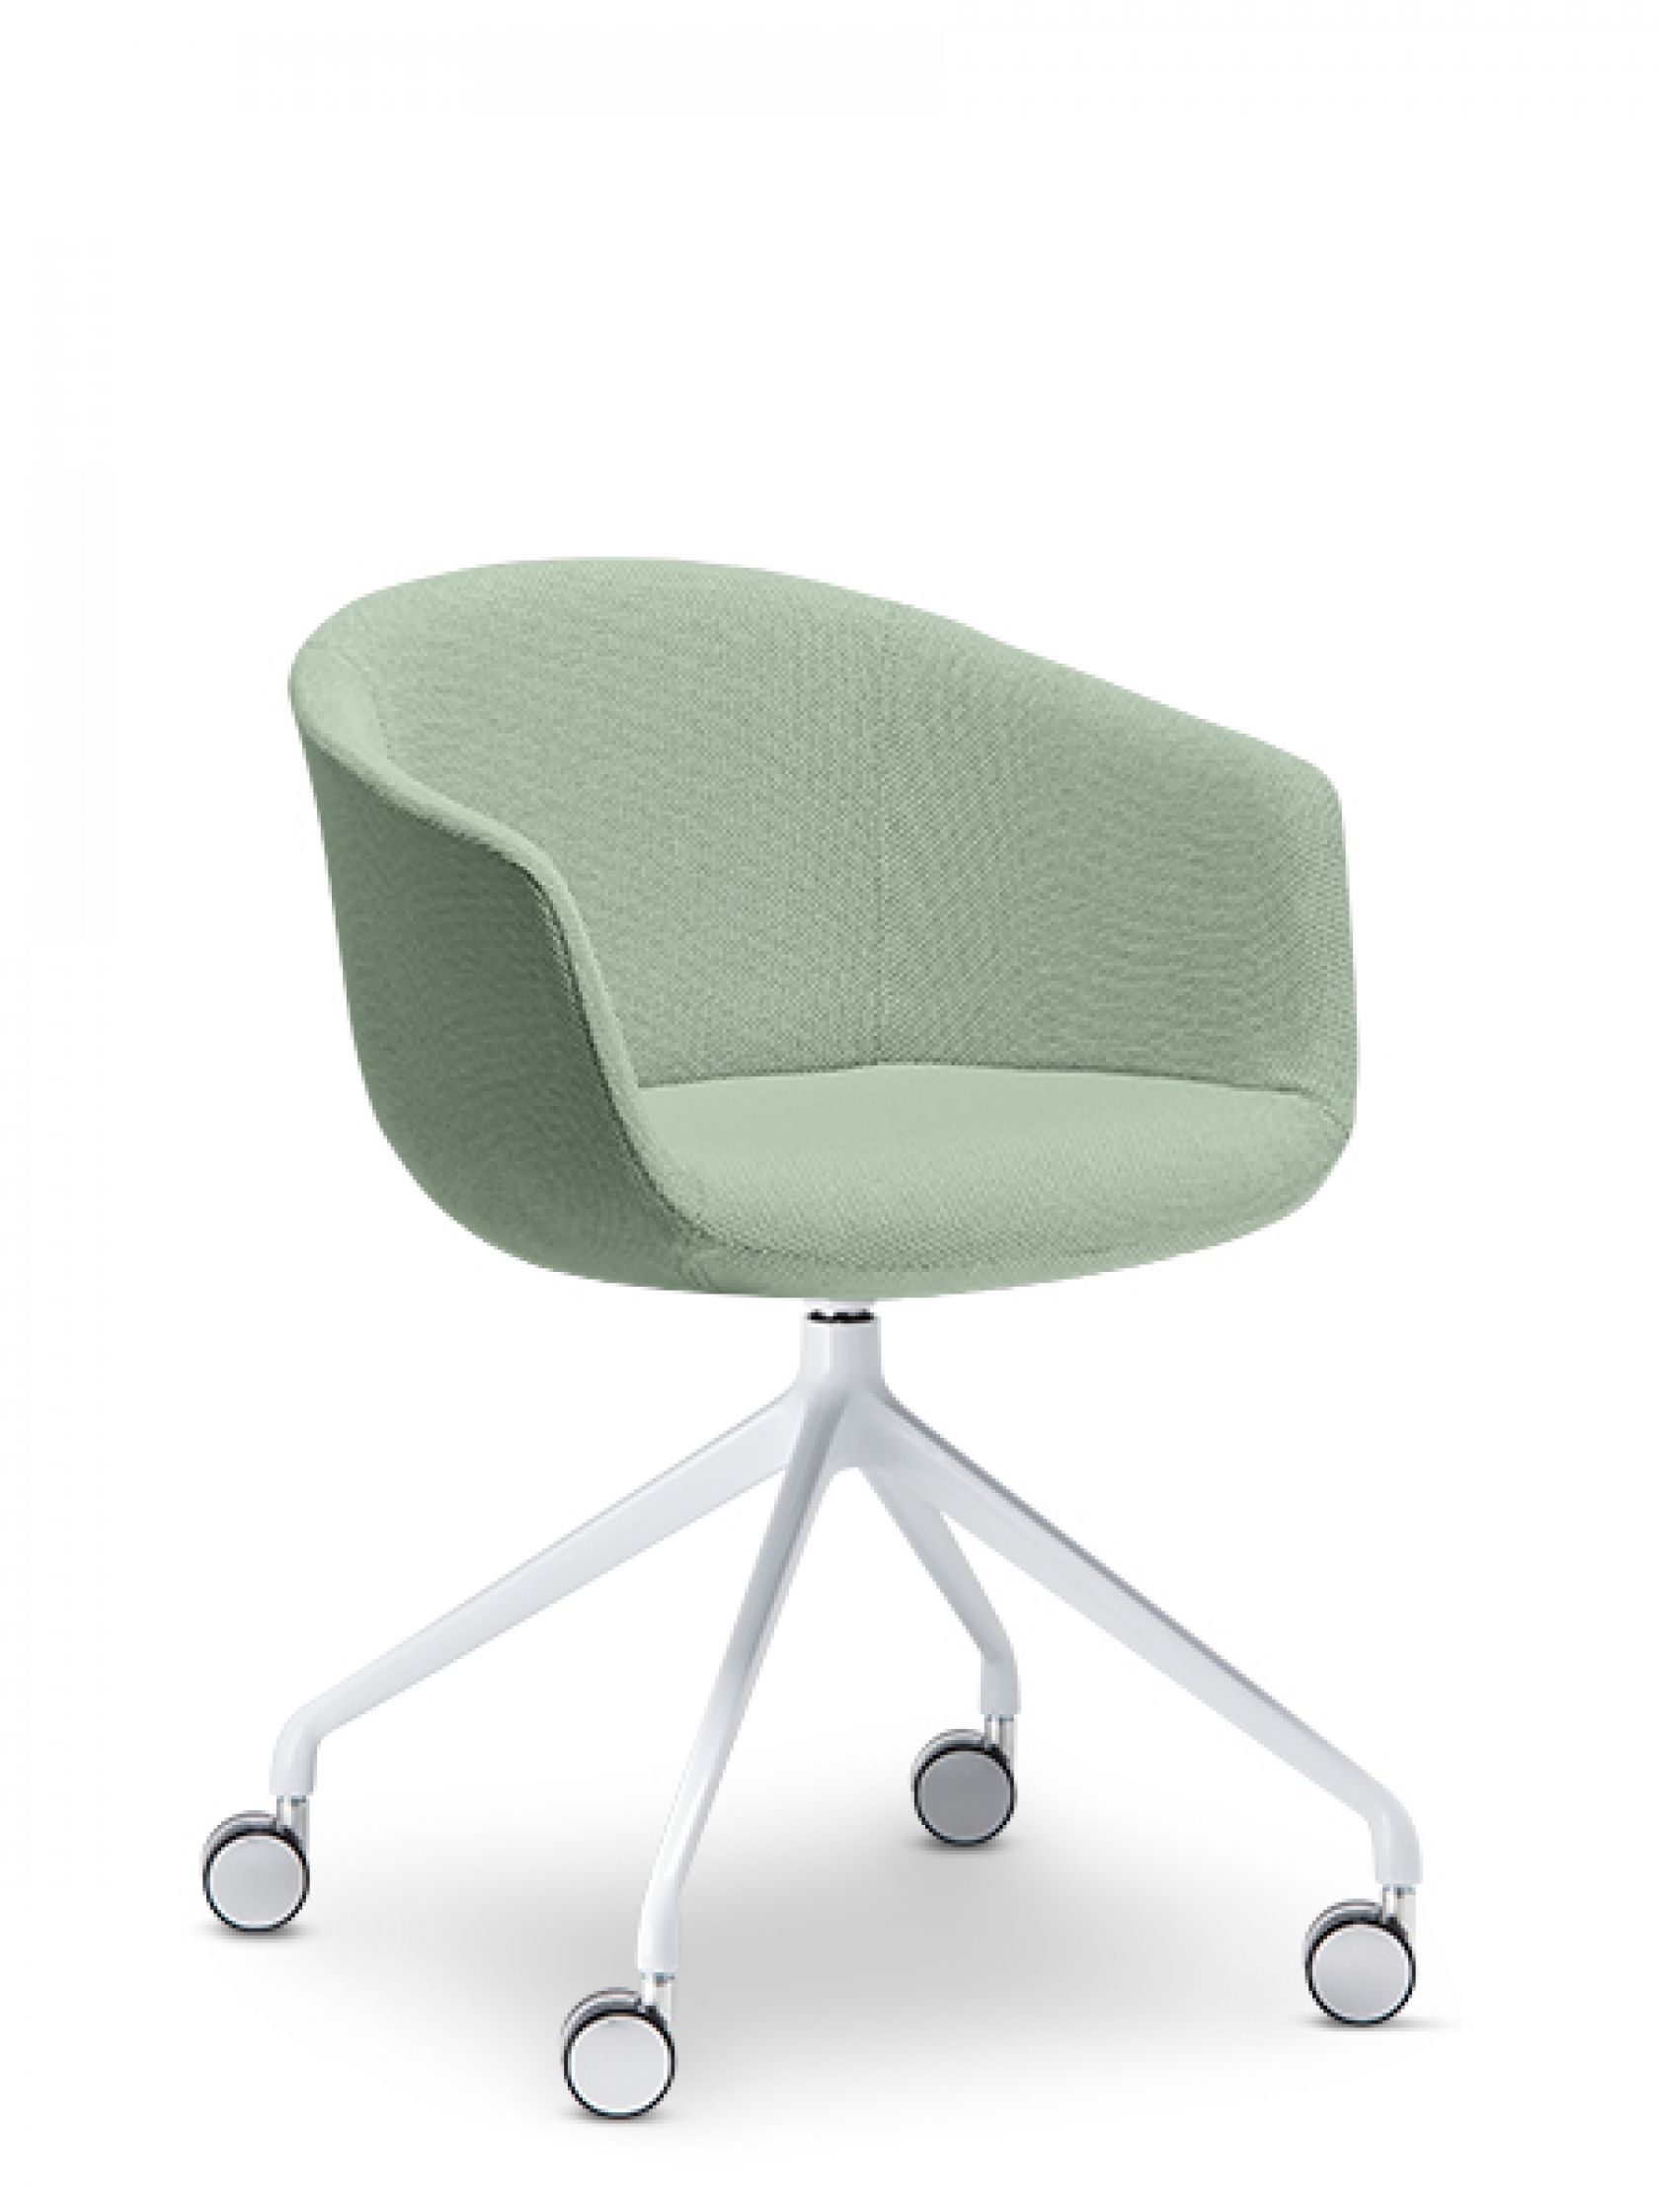 Colo Chair | Schiavello Furniture